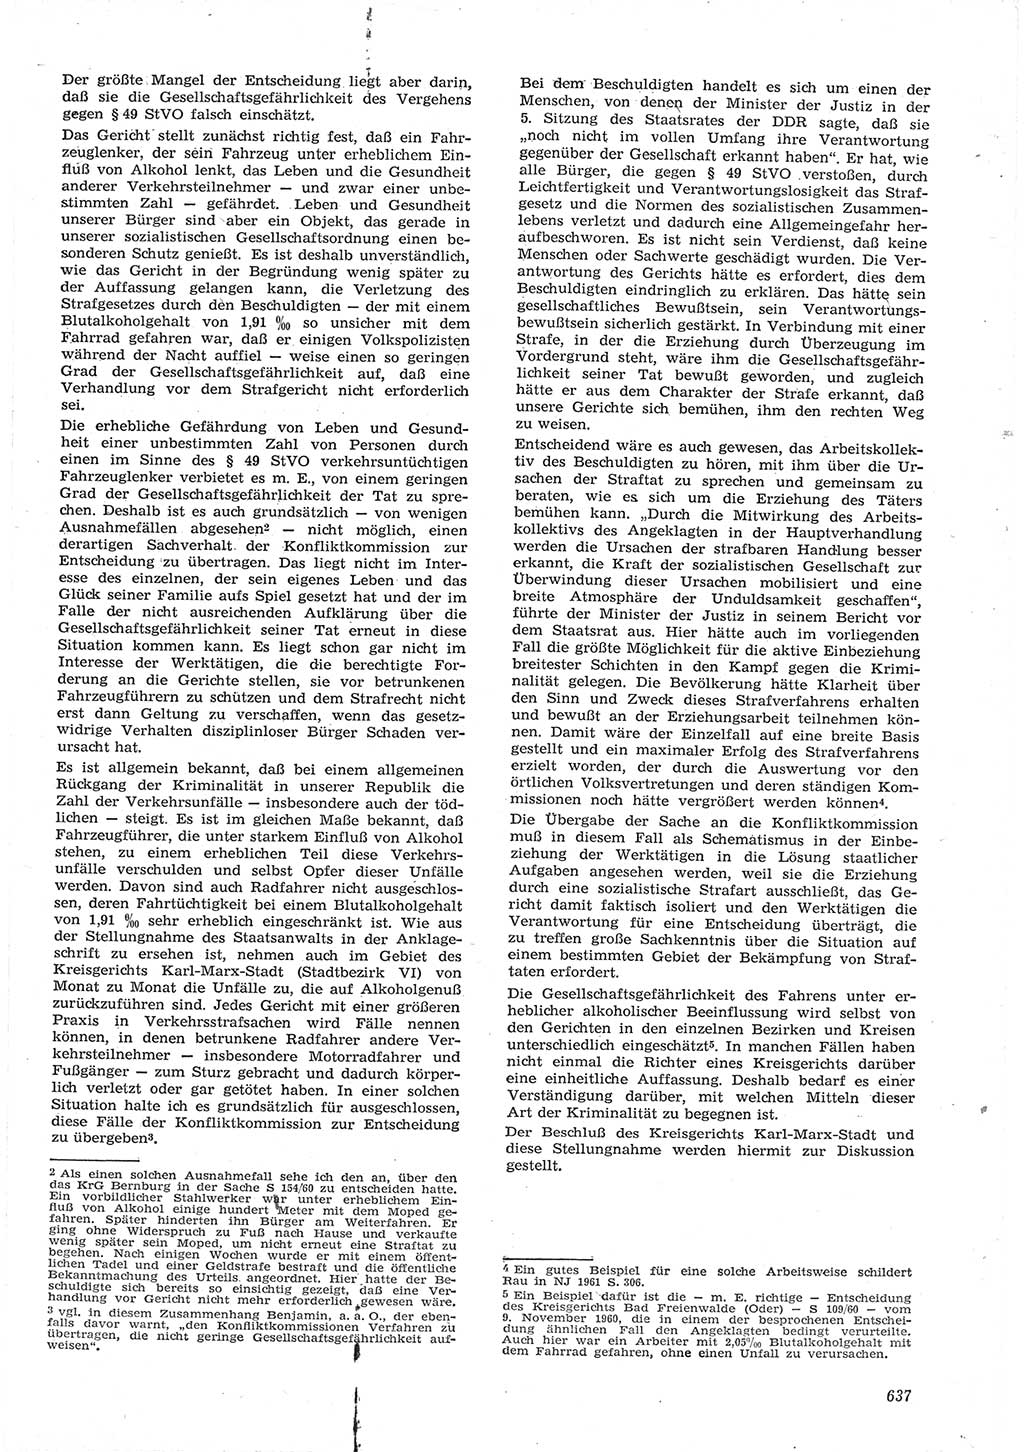 Neue Justiz (NJ), Zeitschrift für Recht und Rechtswissenschaft [Deutsche Demokratische Republik (DDR)], 15. Jahrgang 1961, Seite 637 (NJ DDR 1961, S. 637)